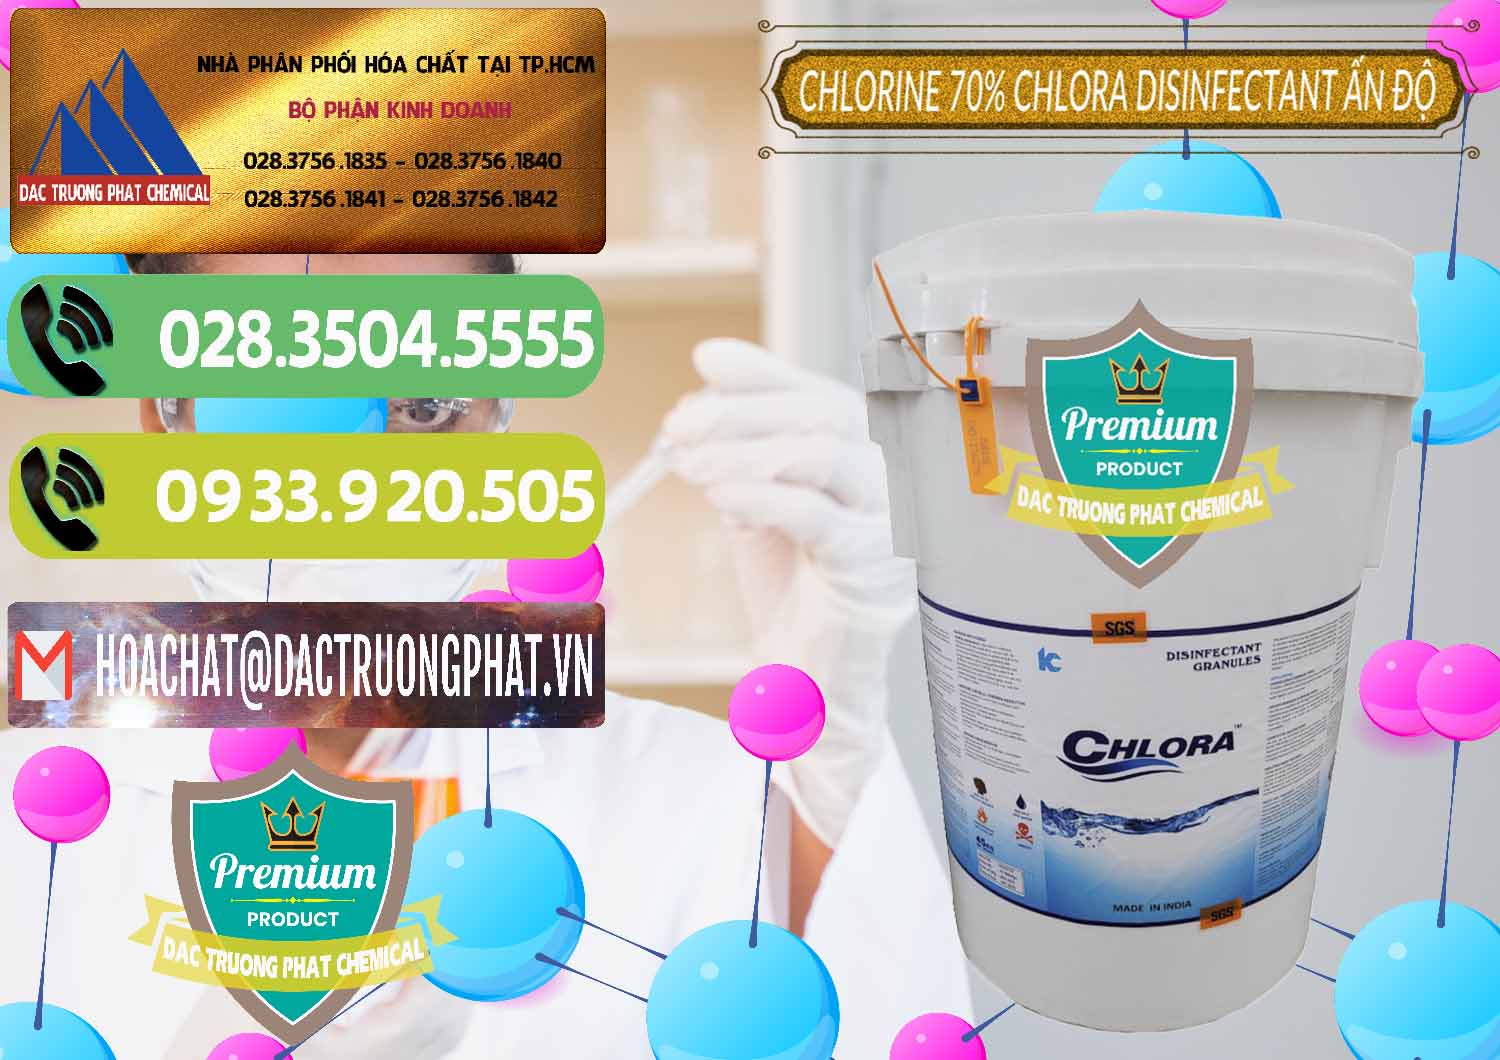 Cty nhập khẩu - bán Chlorine – Clorin 70% Chlora Disinfectant Ấn Độ India - 0213 - Công ty chuyên kinh doanh và phân phối hóa chất tại TP.HCM - hoachatmientay.vn